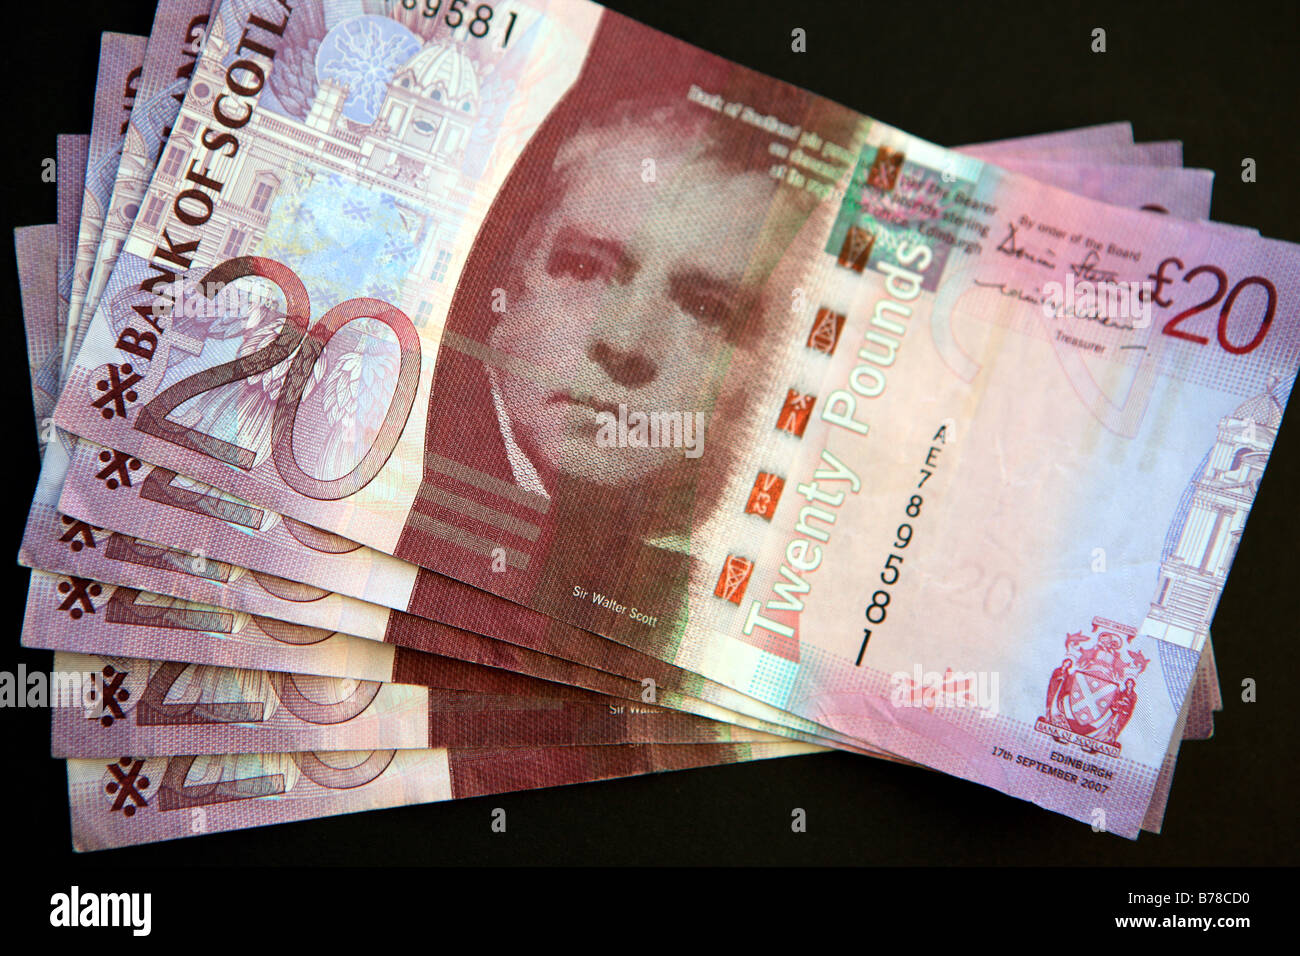 Twenty pound notes Stock Photo